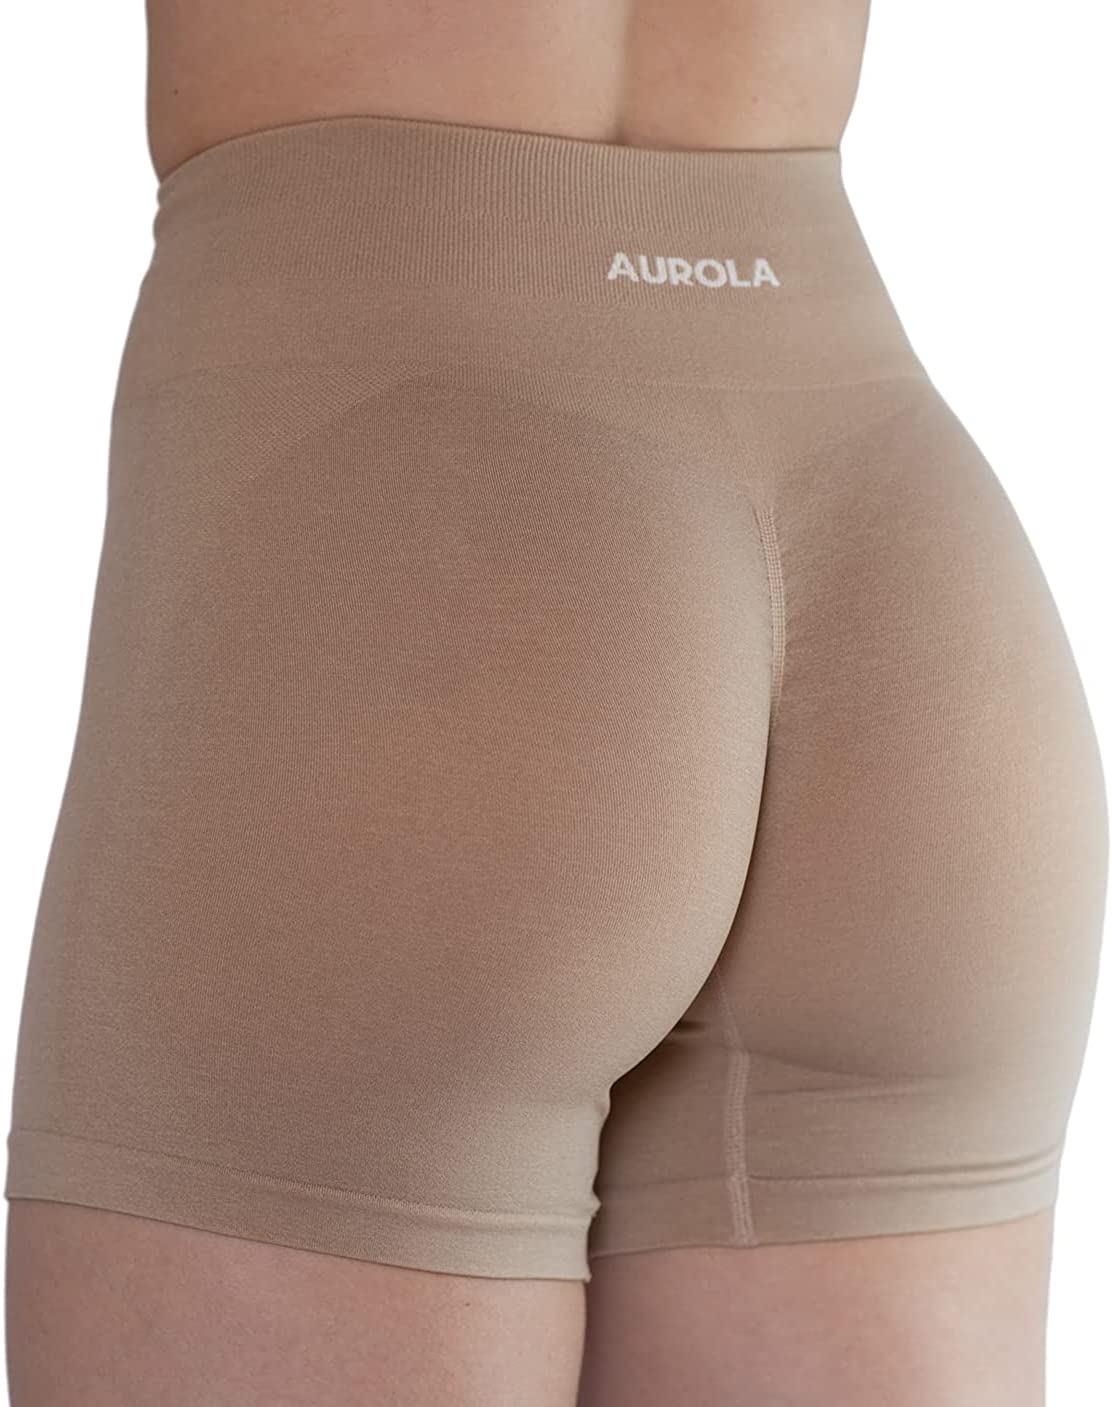 Title: “AUROLA Workout Shorts for Women Seamless Scrunch